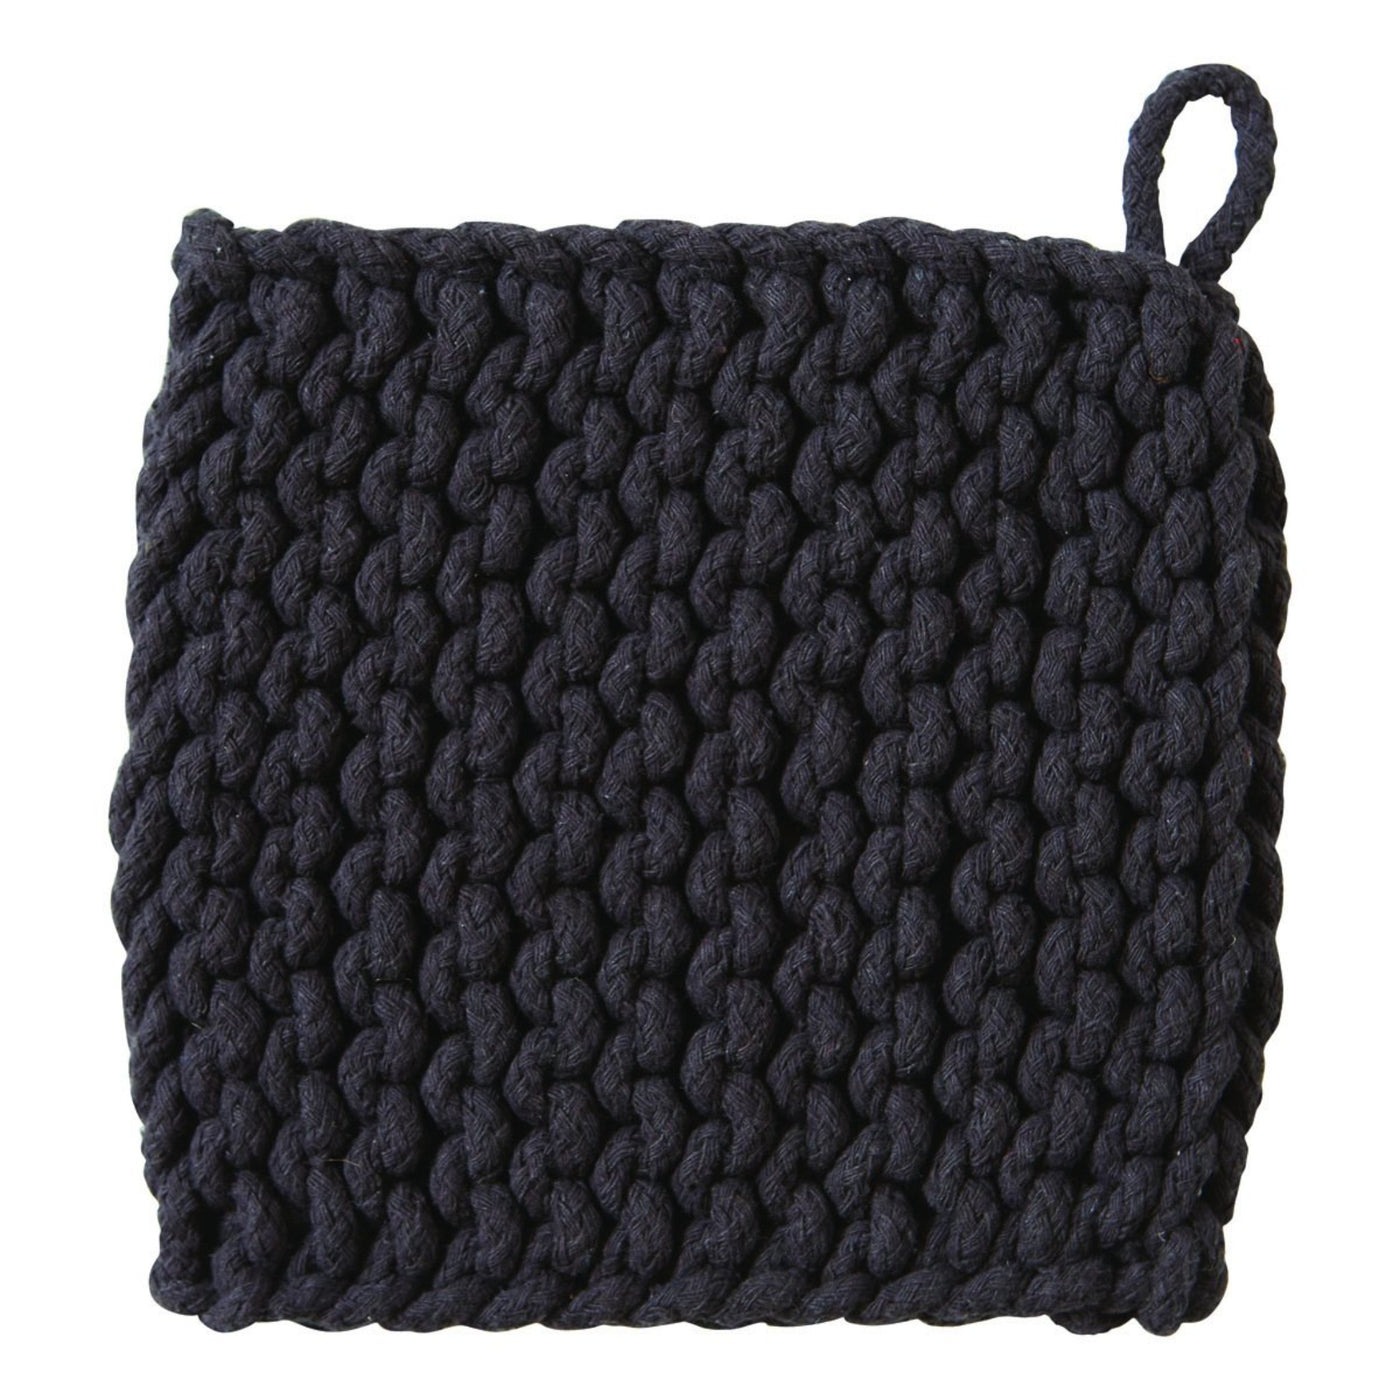 Black Crochet Trivet